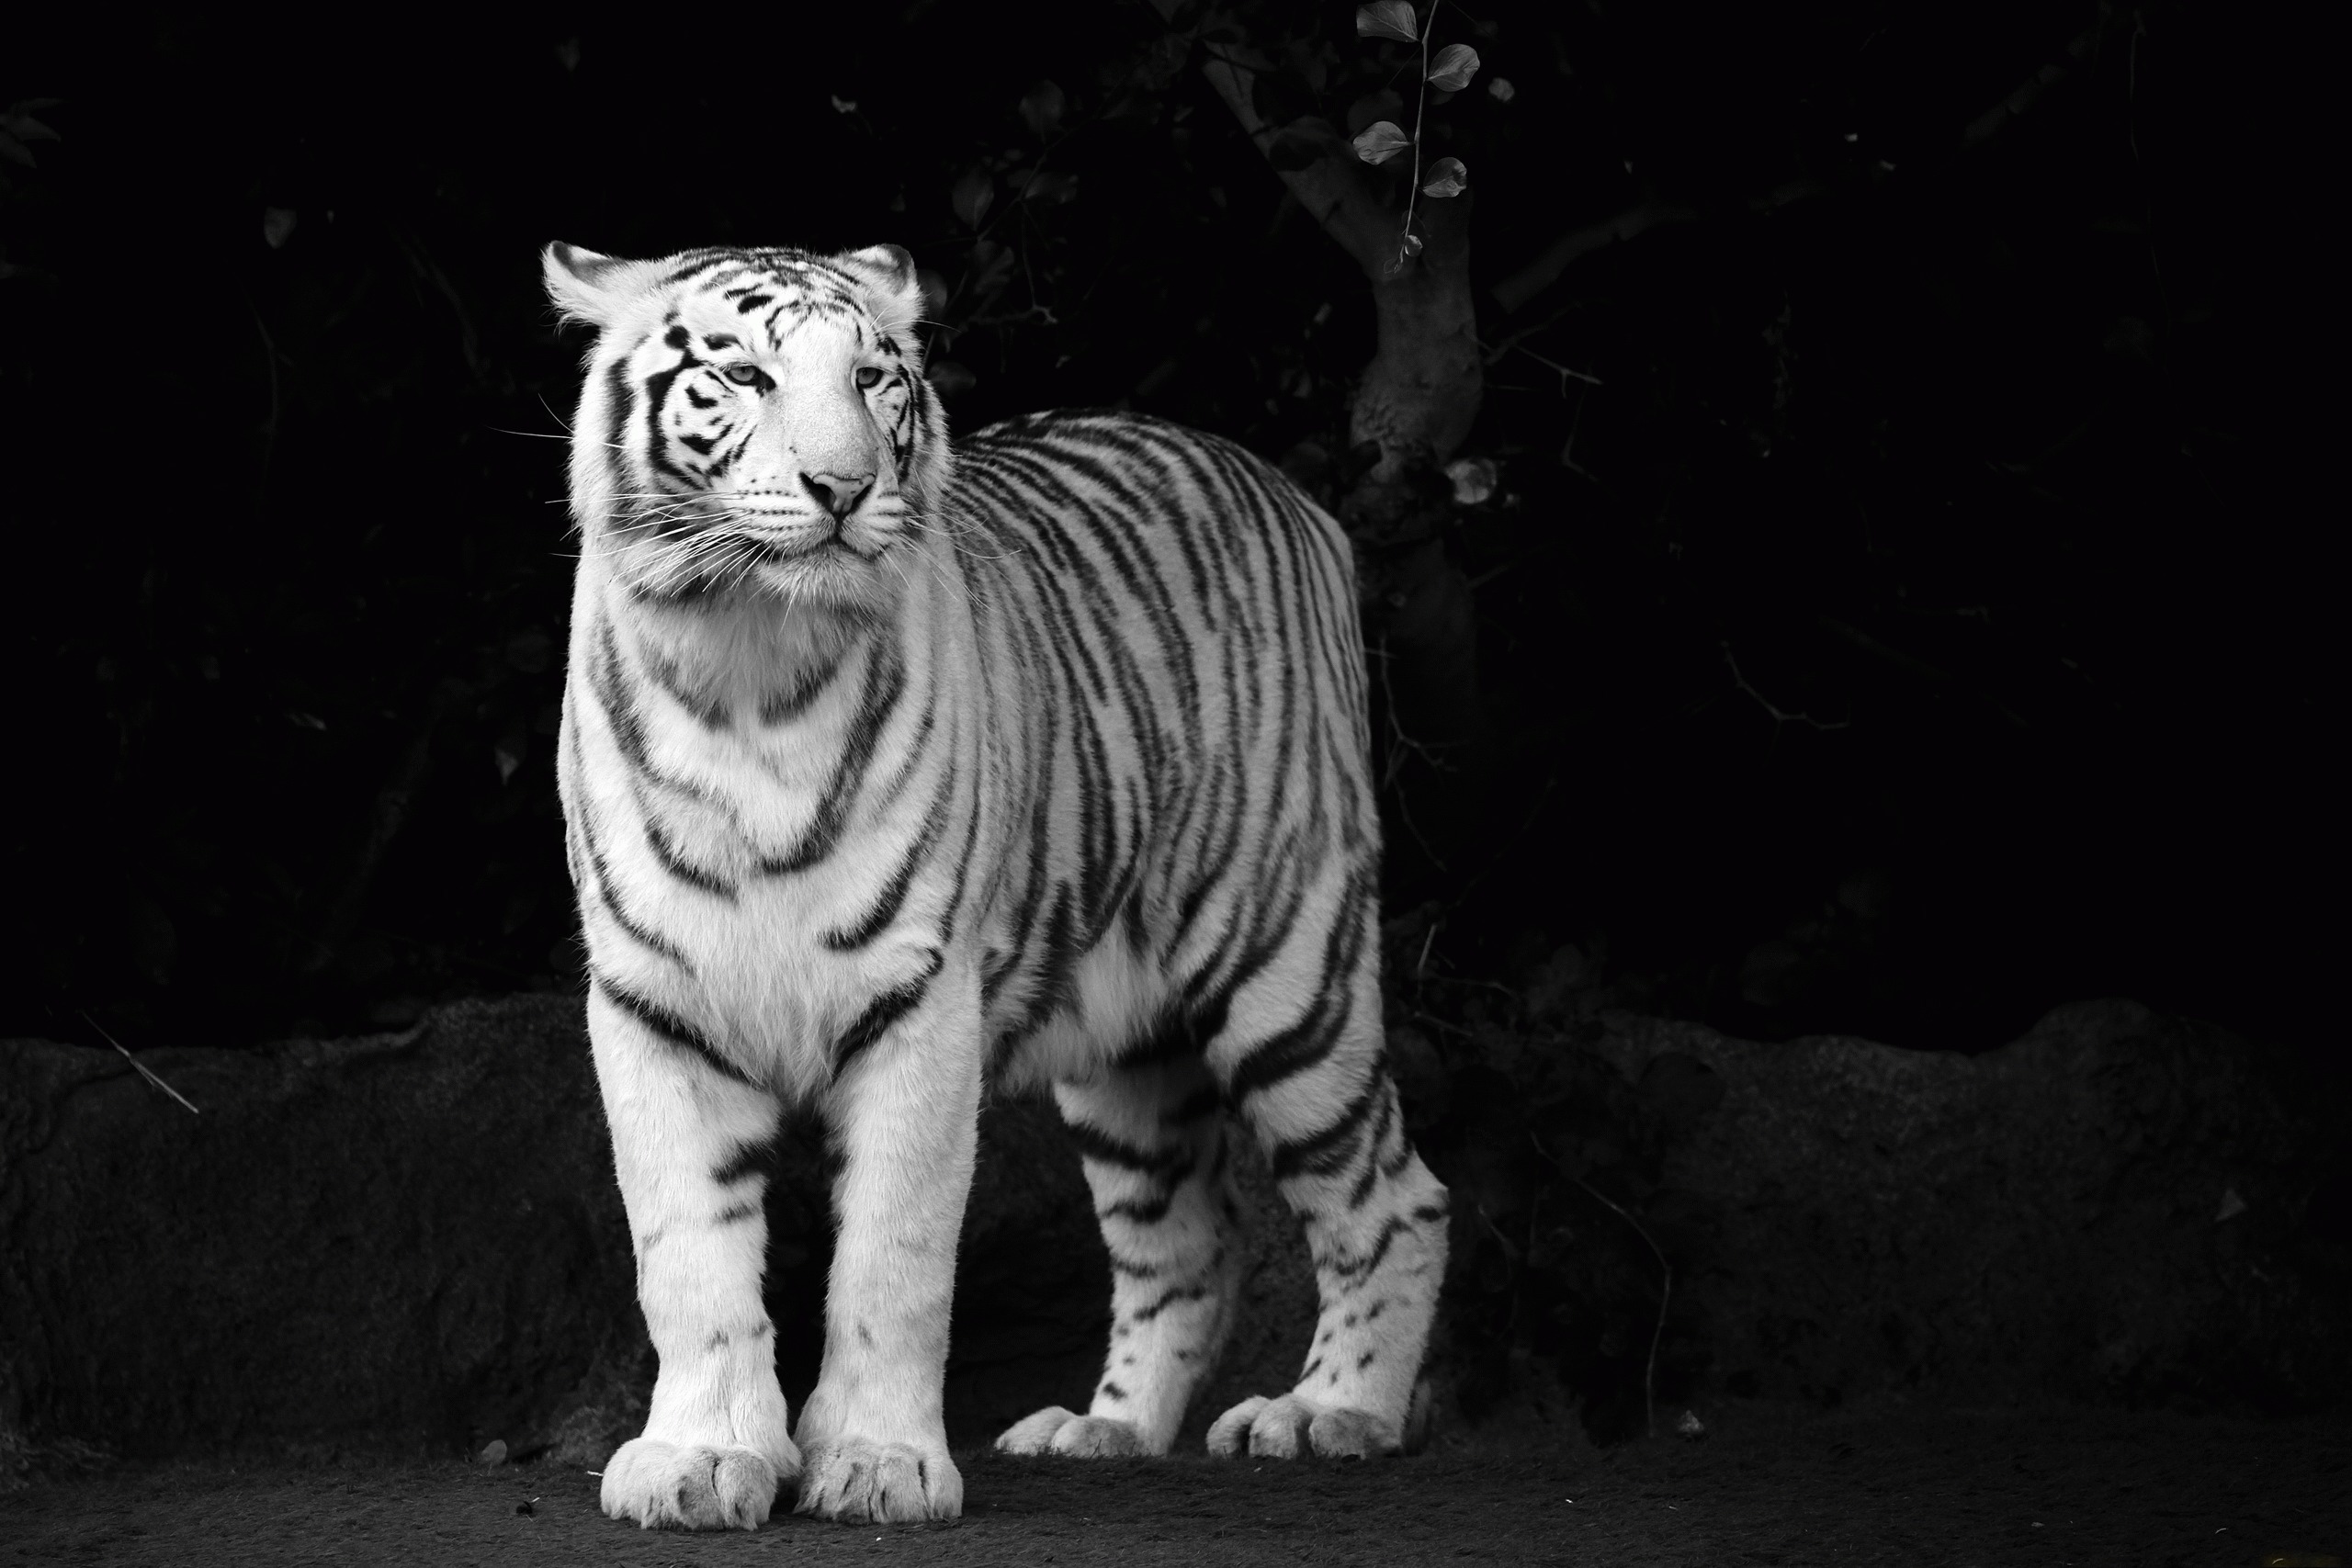 kaplan wallpaper,tiger,vertebrate,bengal tiger,mammal,white